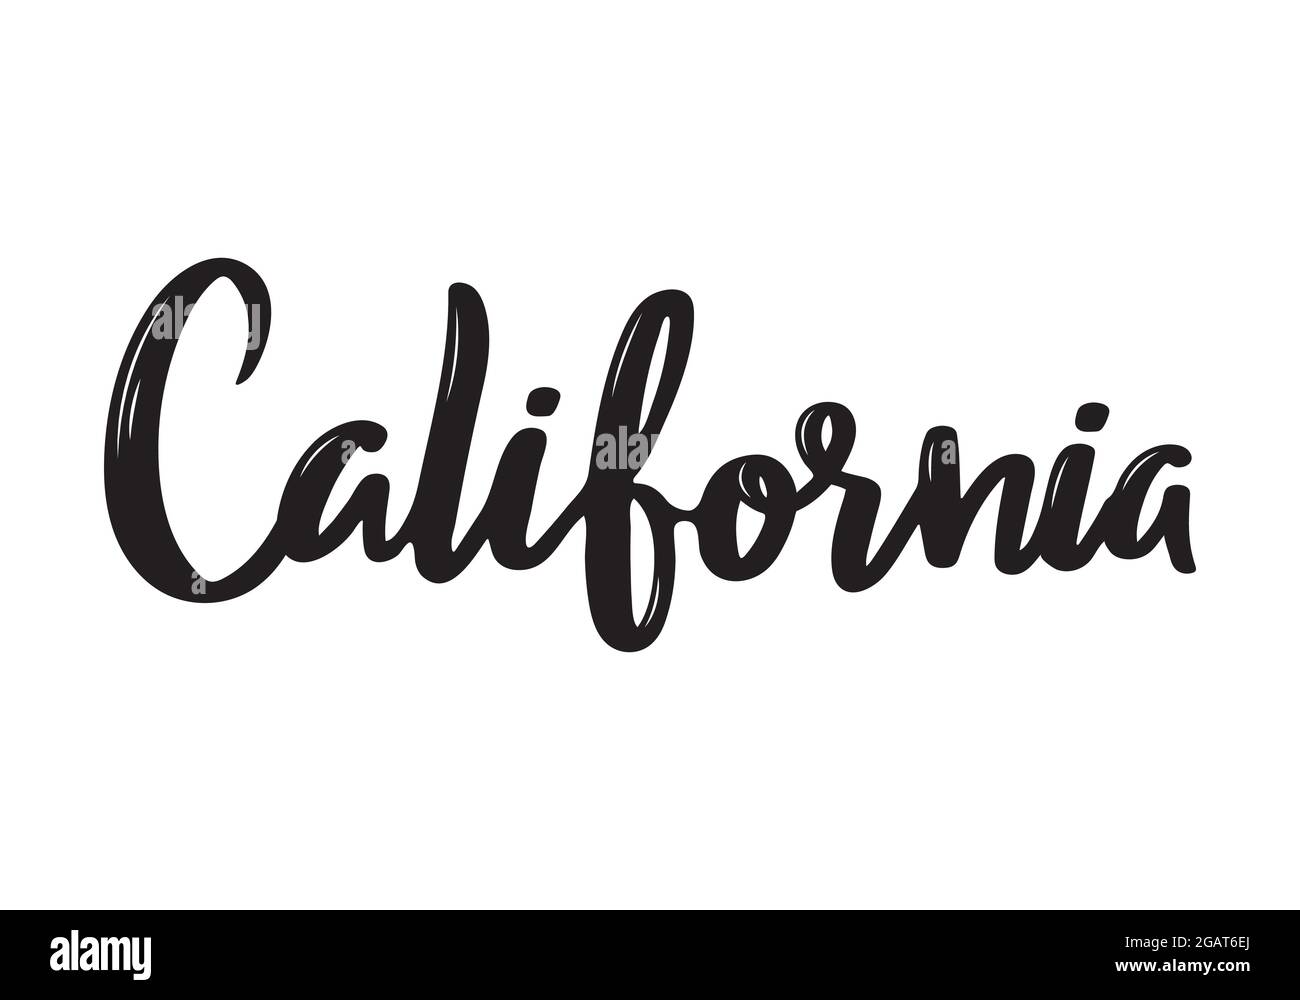 Kalifornien handschriftliche Kalligraphie Name des US-Staates. Handgezeichnete Kalligraphie mit Pinsel. Vektordesign-Vorlage. Stock Vektor